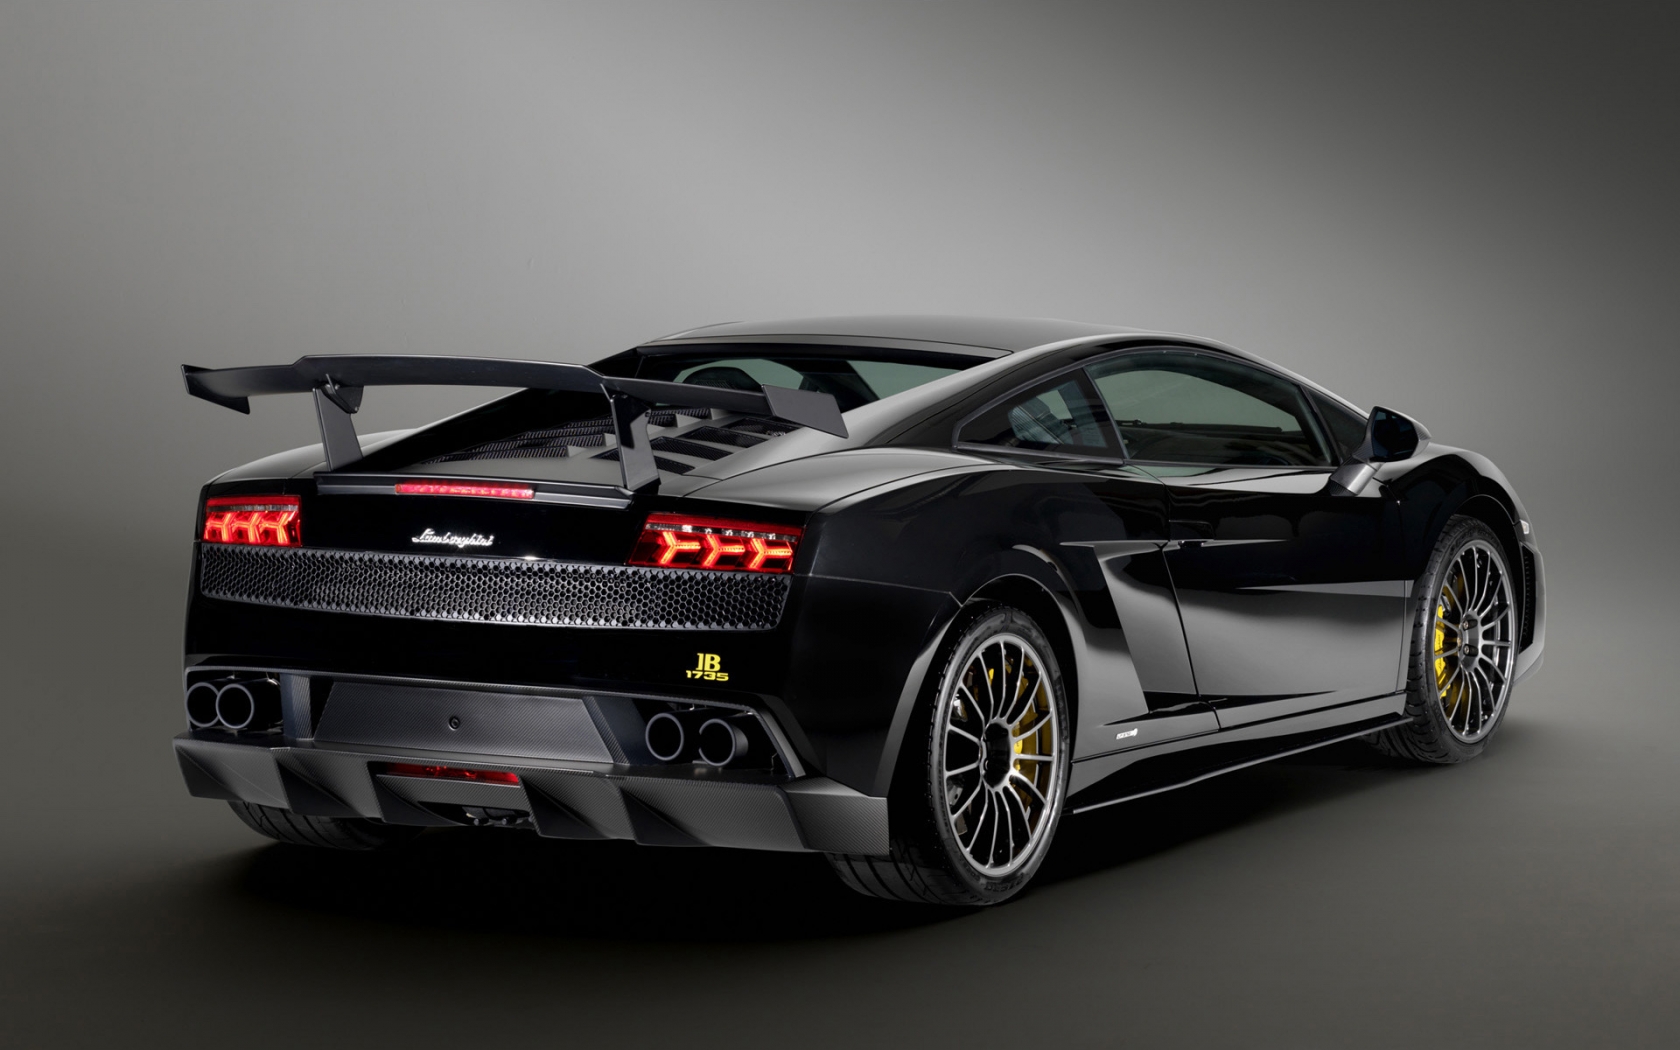 Lamborghini Gallardo LP570 2011 for 1680 x 1050 widescreen resolution